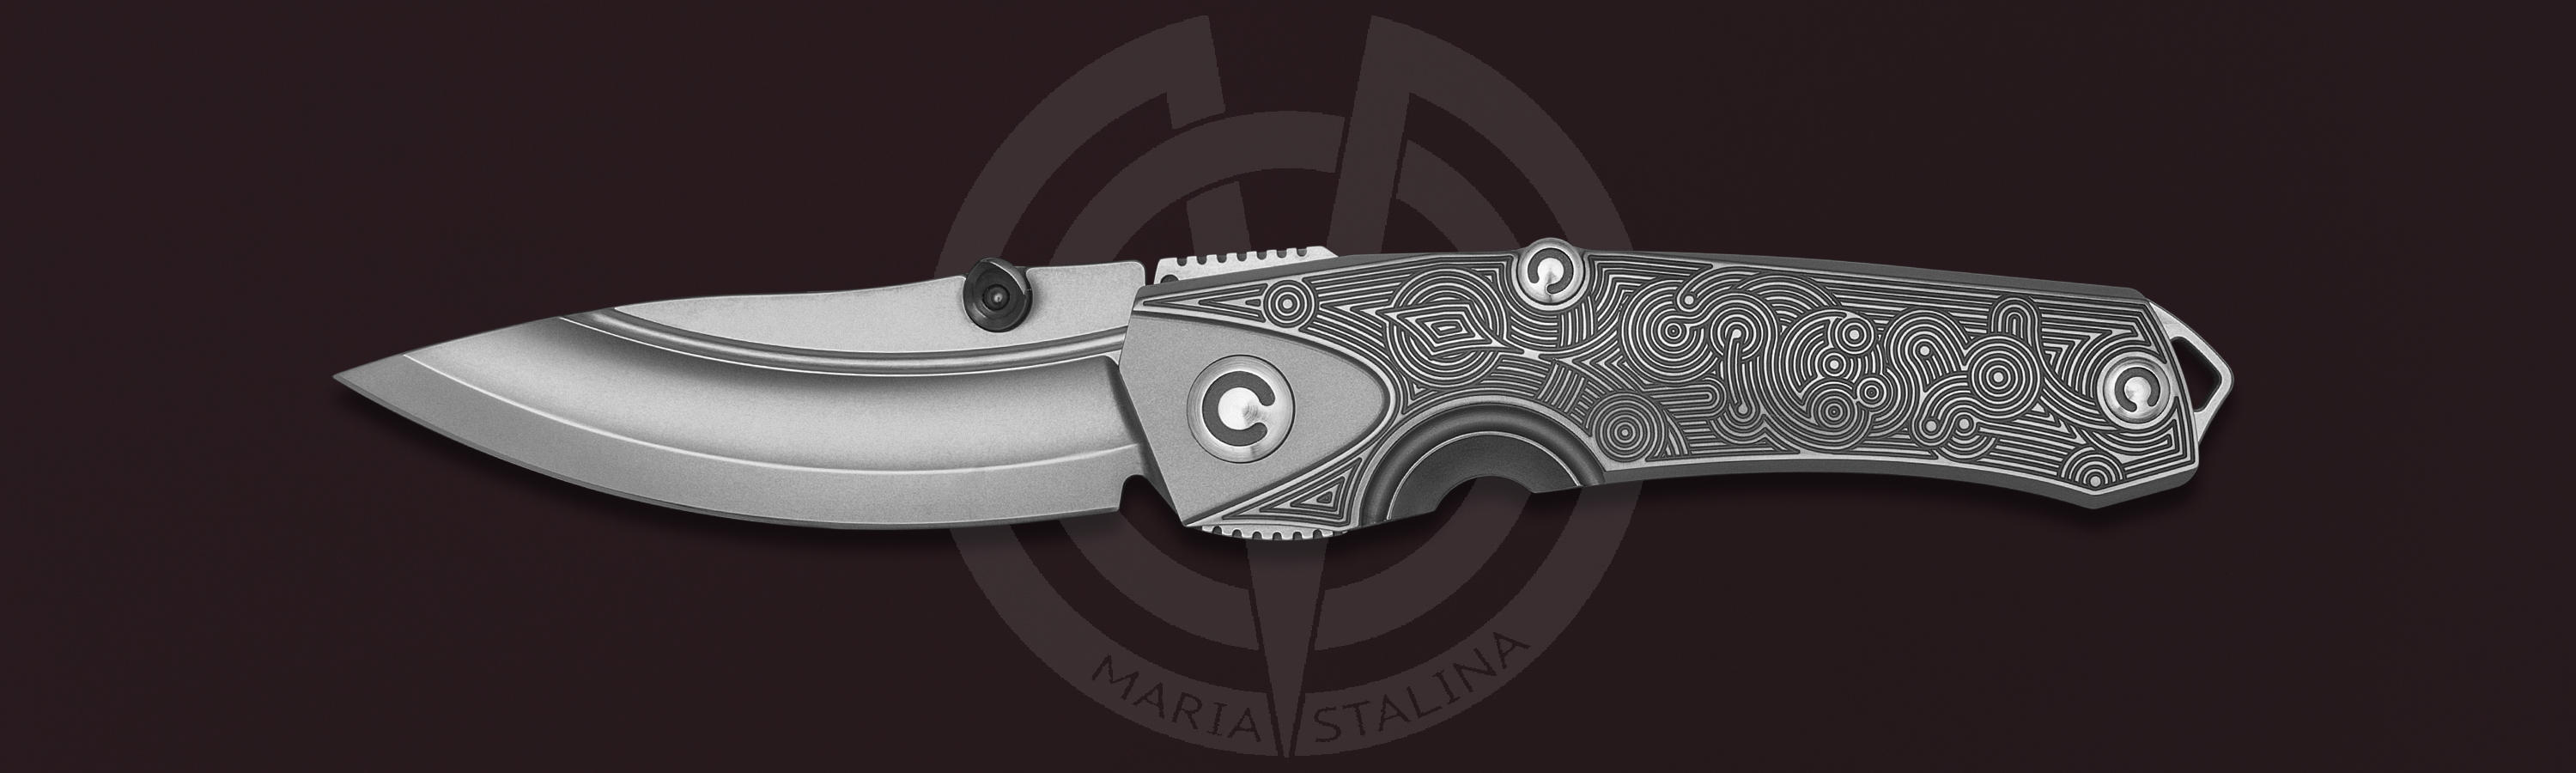 Rhino T Alpha 5/5 knife